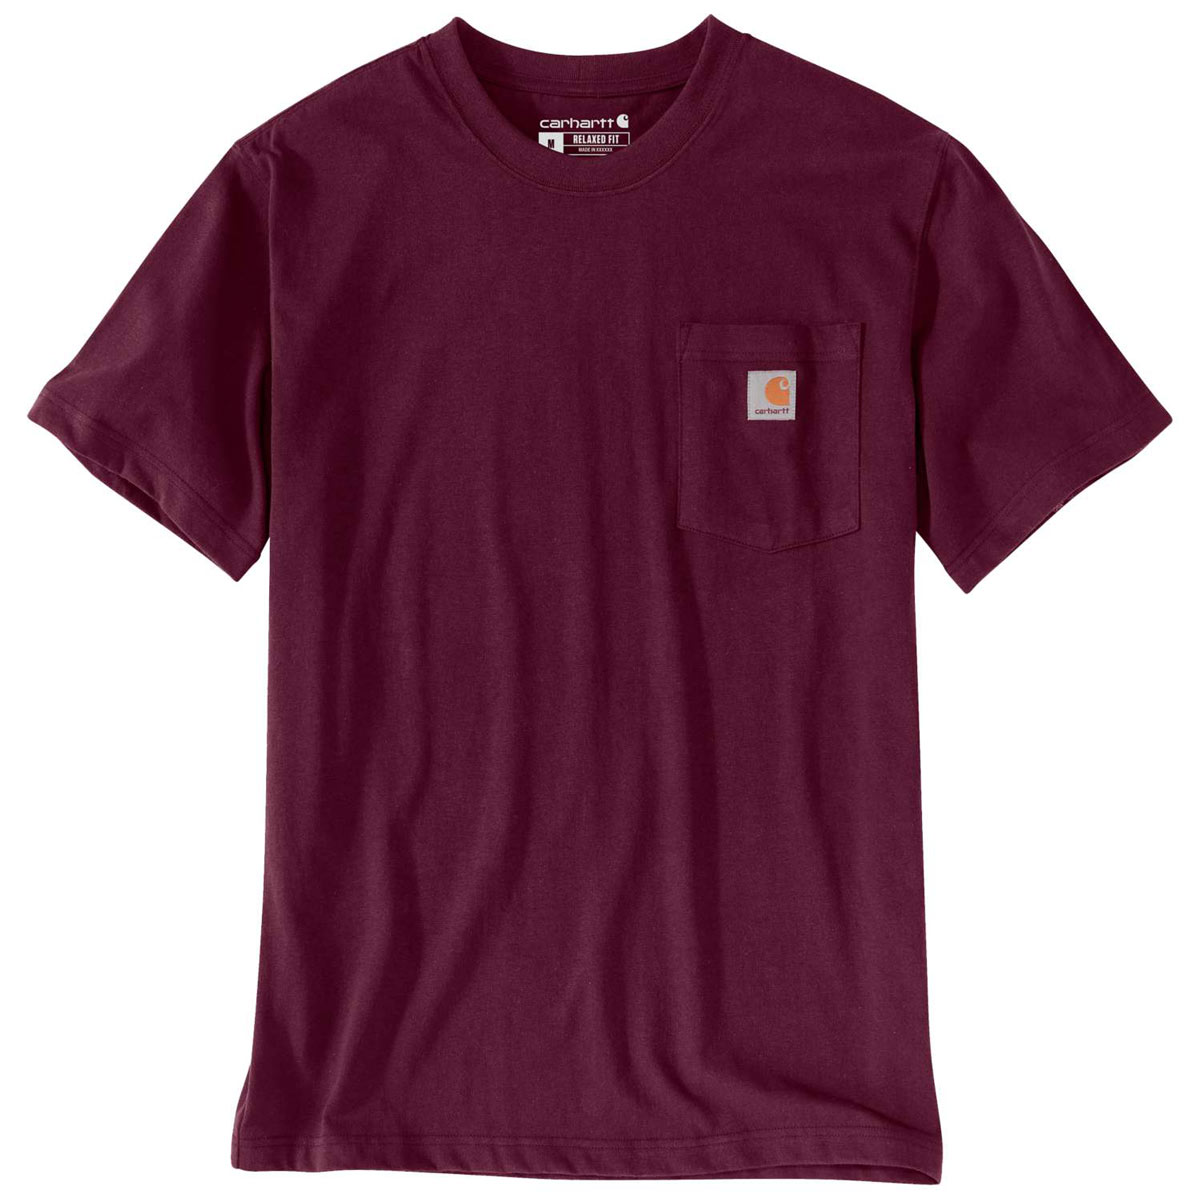 Carhartt T-Shirt mit Brusttasche - 22